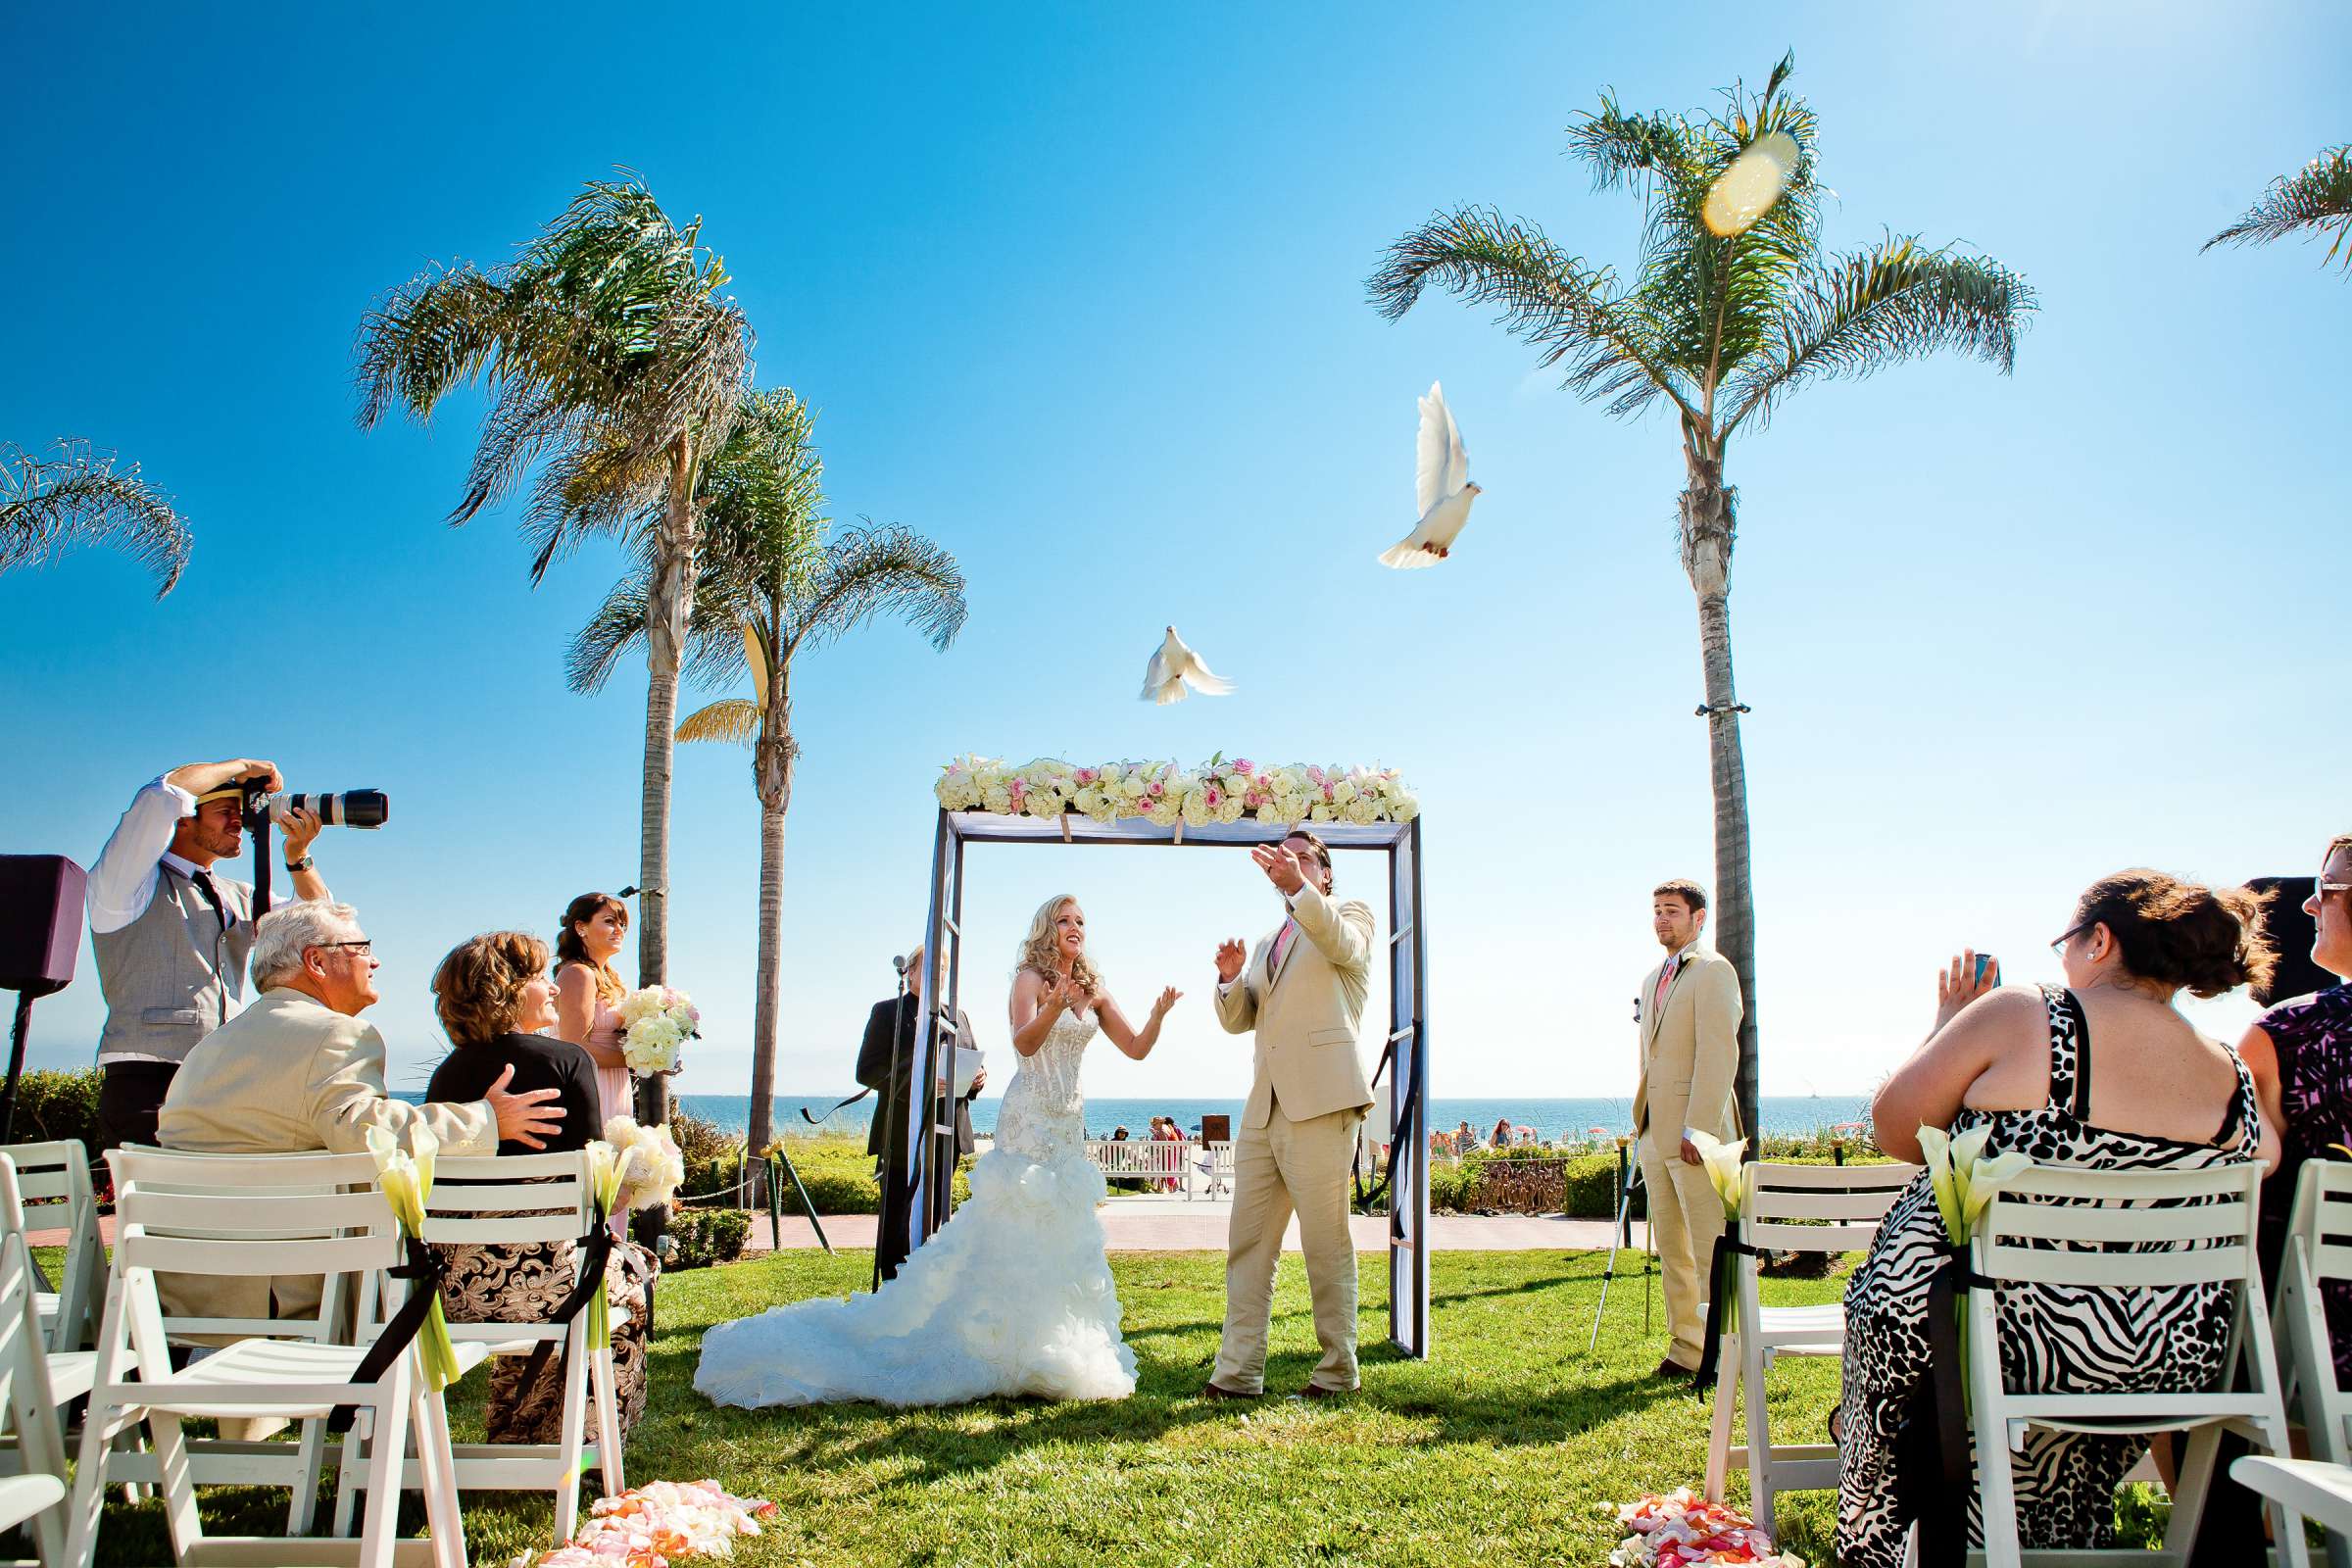 Hotel Del Coronado Wedding, Sarah and Tony Wedding Photo #323753 by True Photography